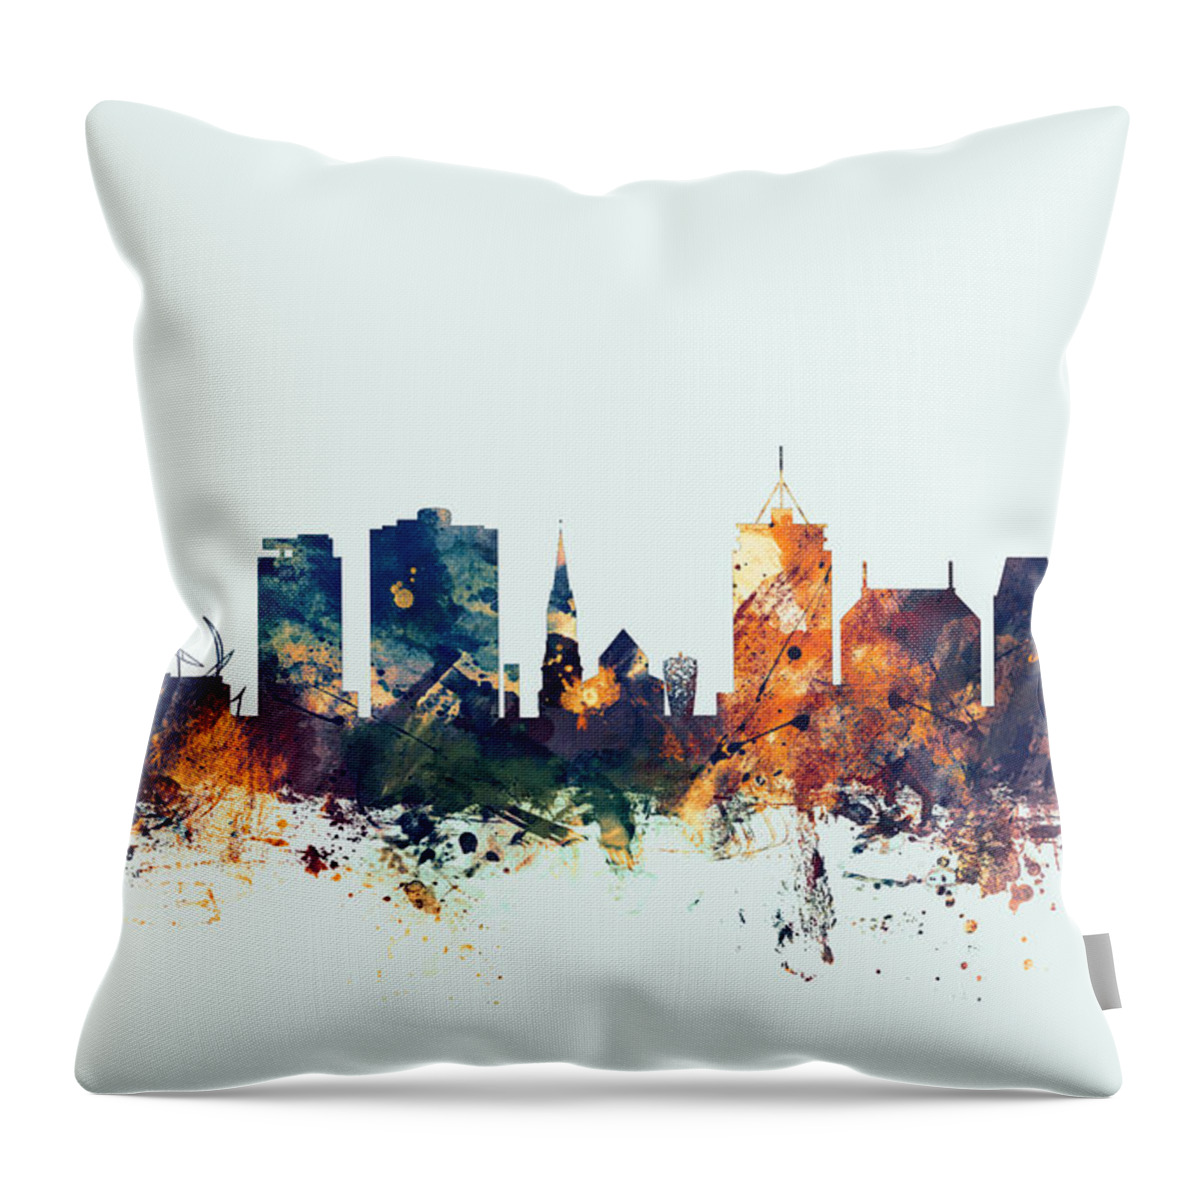 City Skyline Throw Pillow featuring the digital art Christchurch New Zealand Skyline #2 by Michael Tompsett